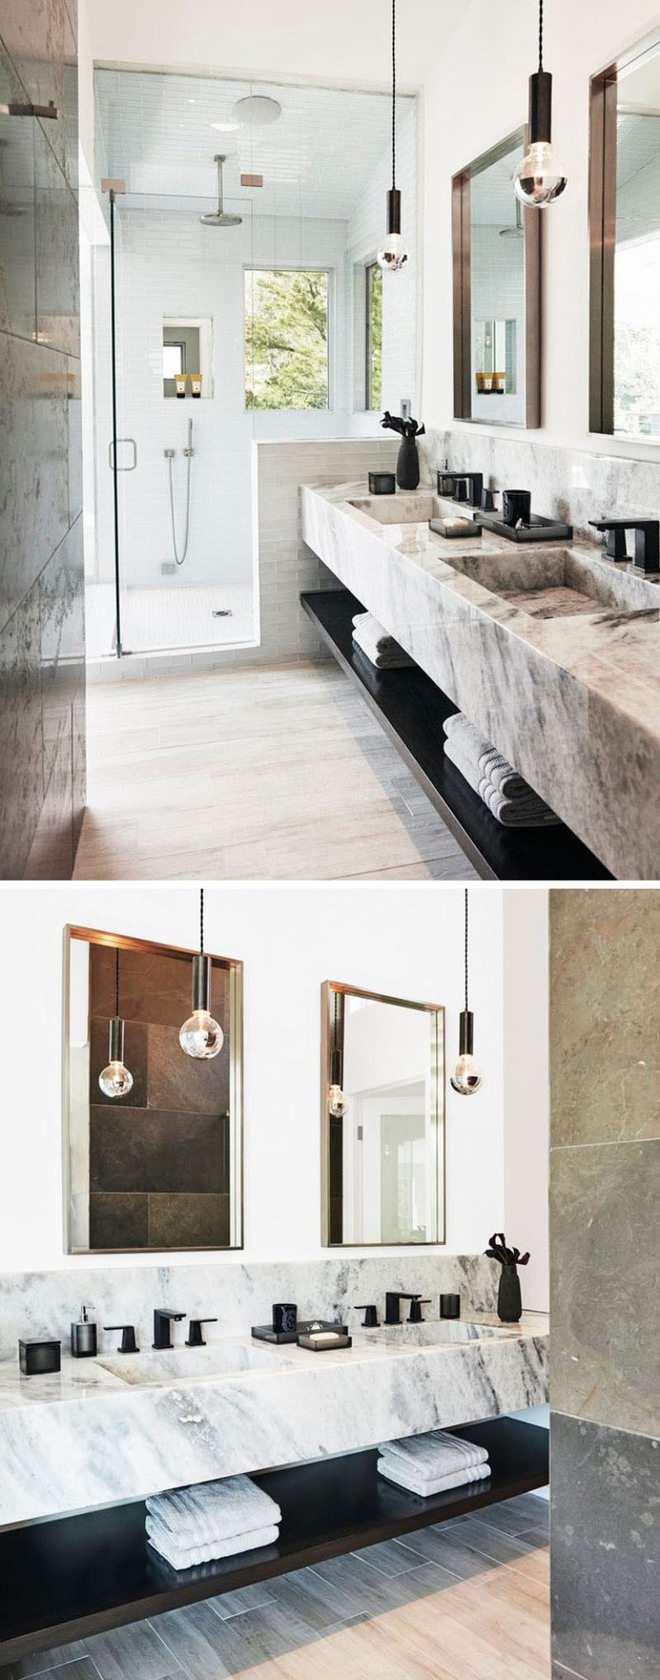 Thiết kế kệ mở giúp phòng tắm gia đình trở nên hoàn hảo đến khó tin - Ảnh 3.